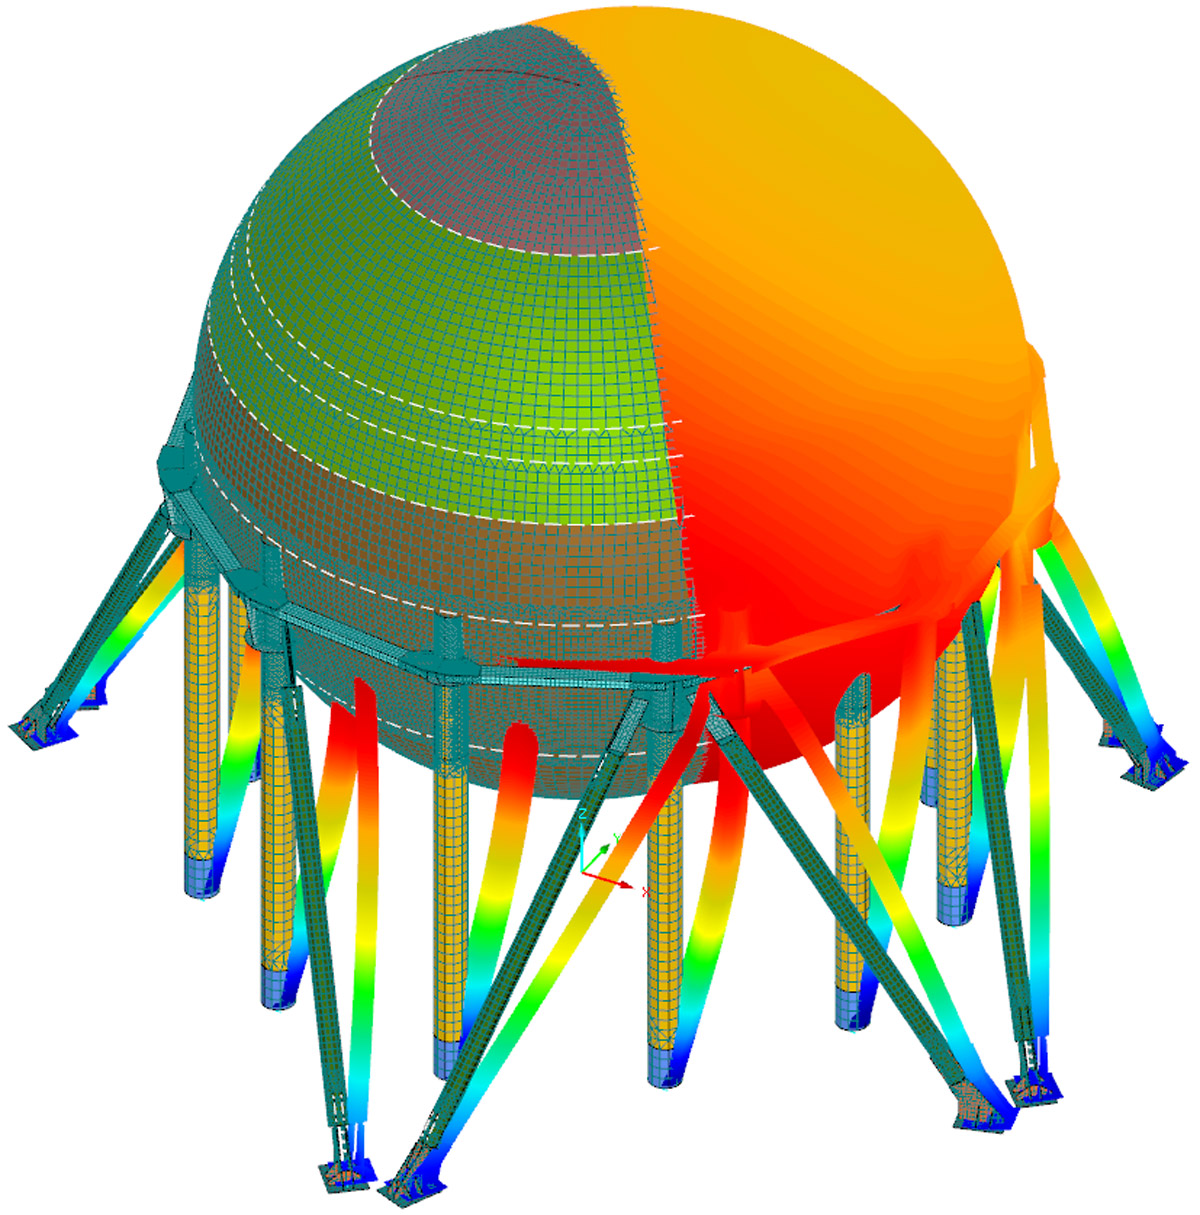 Dimensionnement aux élément finis d’une sphère de stockage de butadiène (2400m³) et structure support sommitale